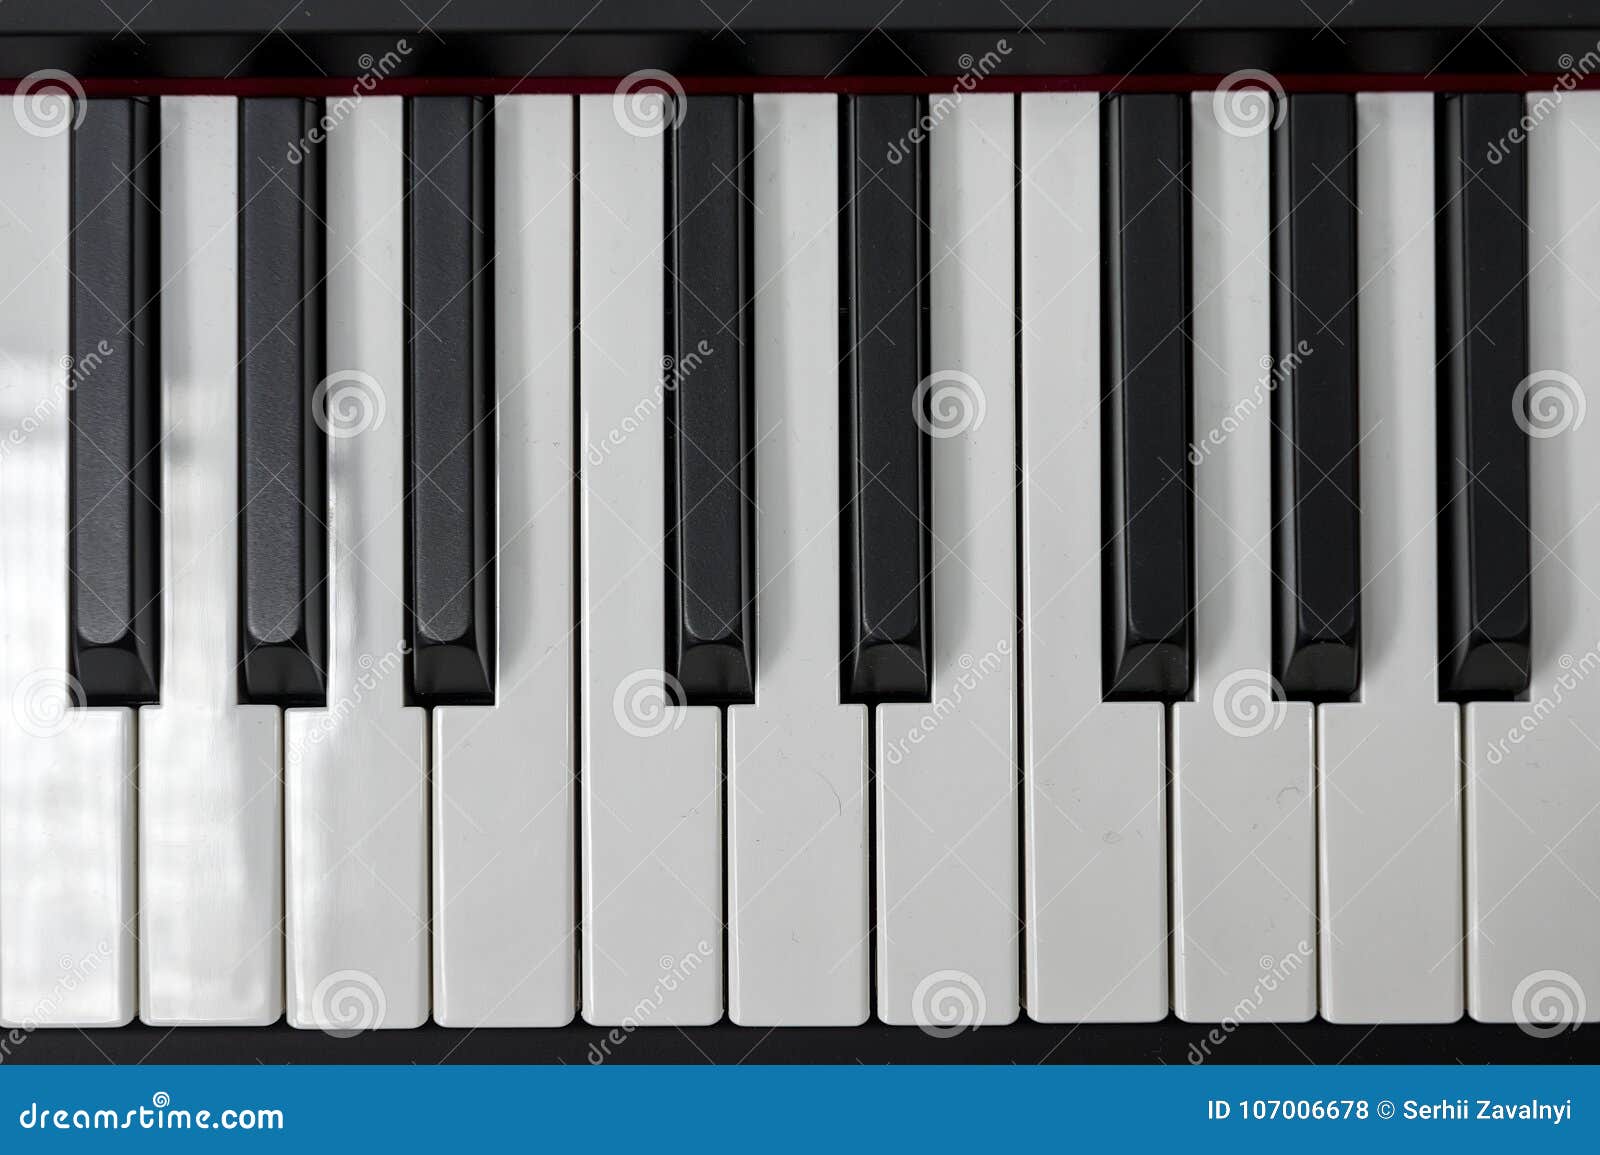 Chaves De Xadrez E Piano Tão Perto Foto de Stock - Imagem de potência,  inteligência: 219983936